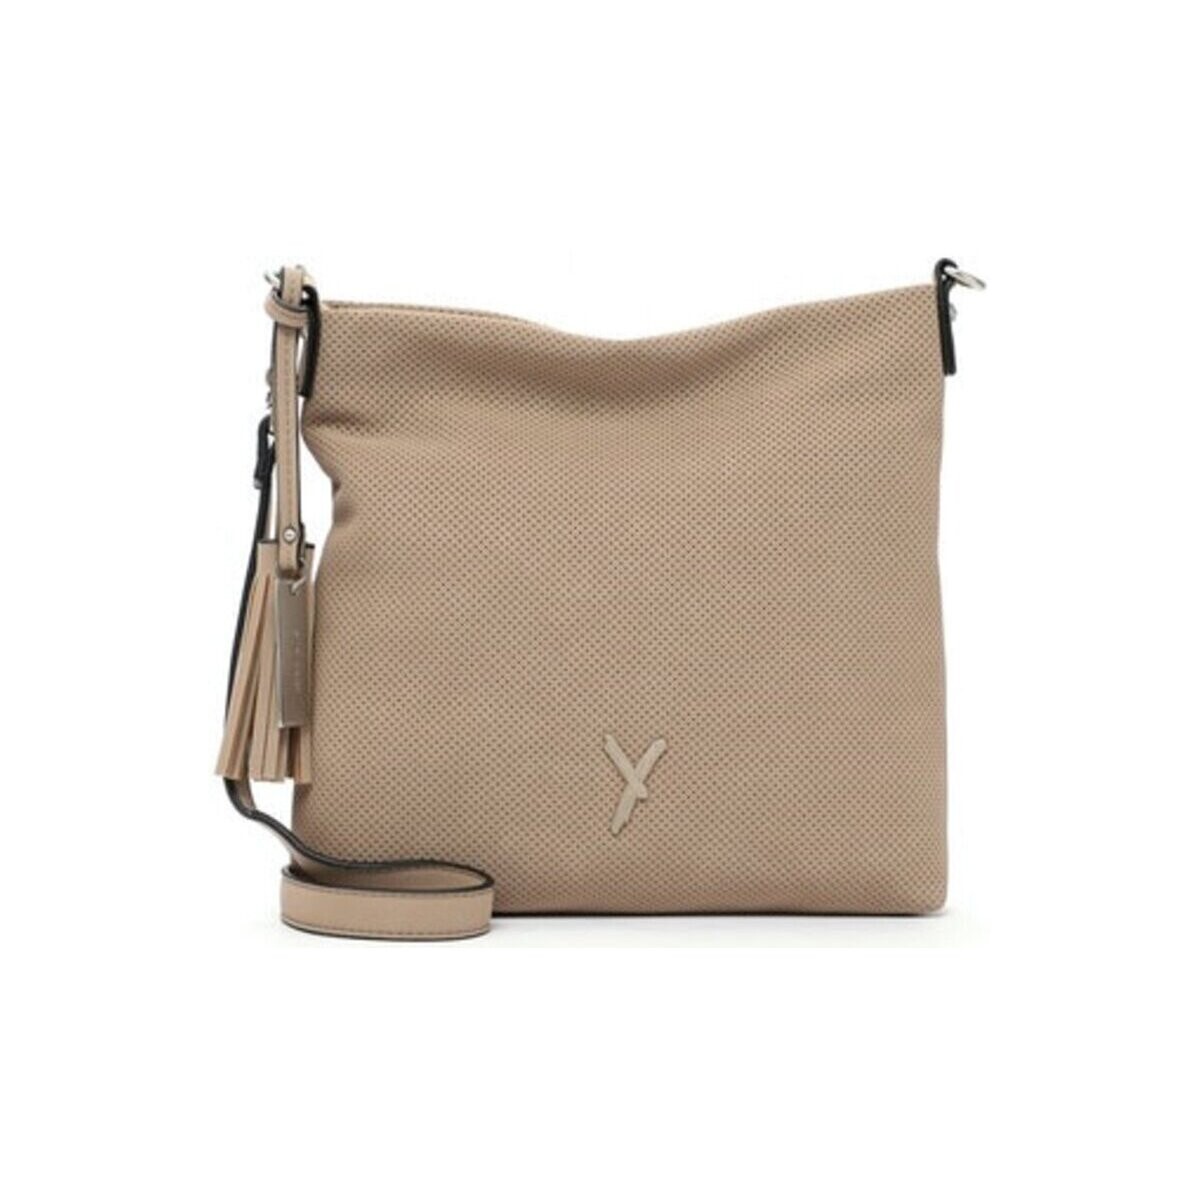 Taschen Damen Handtasche Suri Frey Mode Accessoires Romy 12402,420 420 Beige